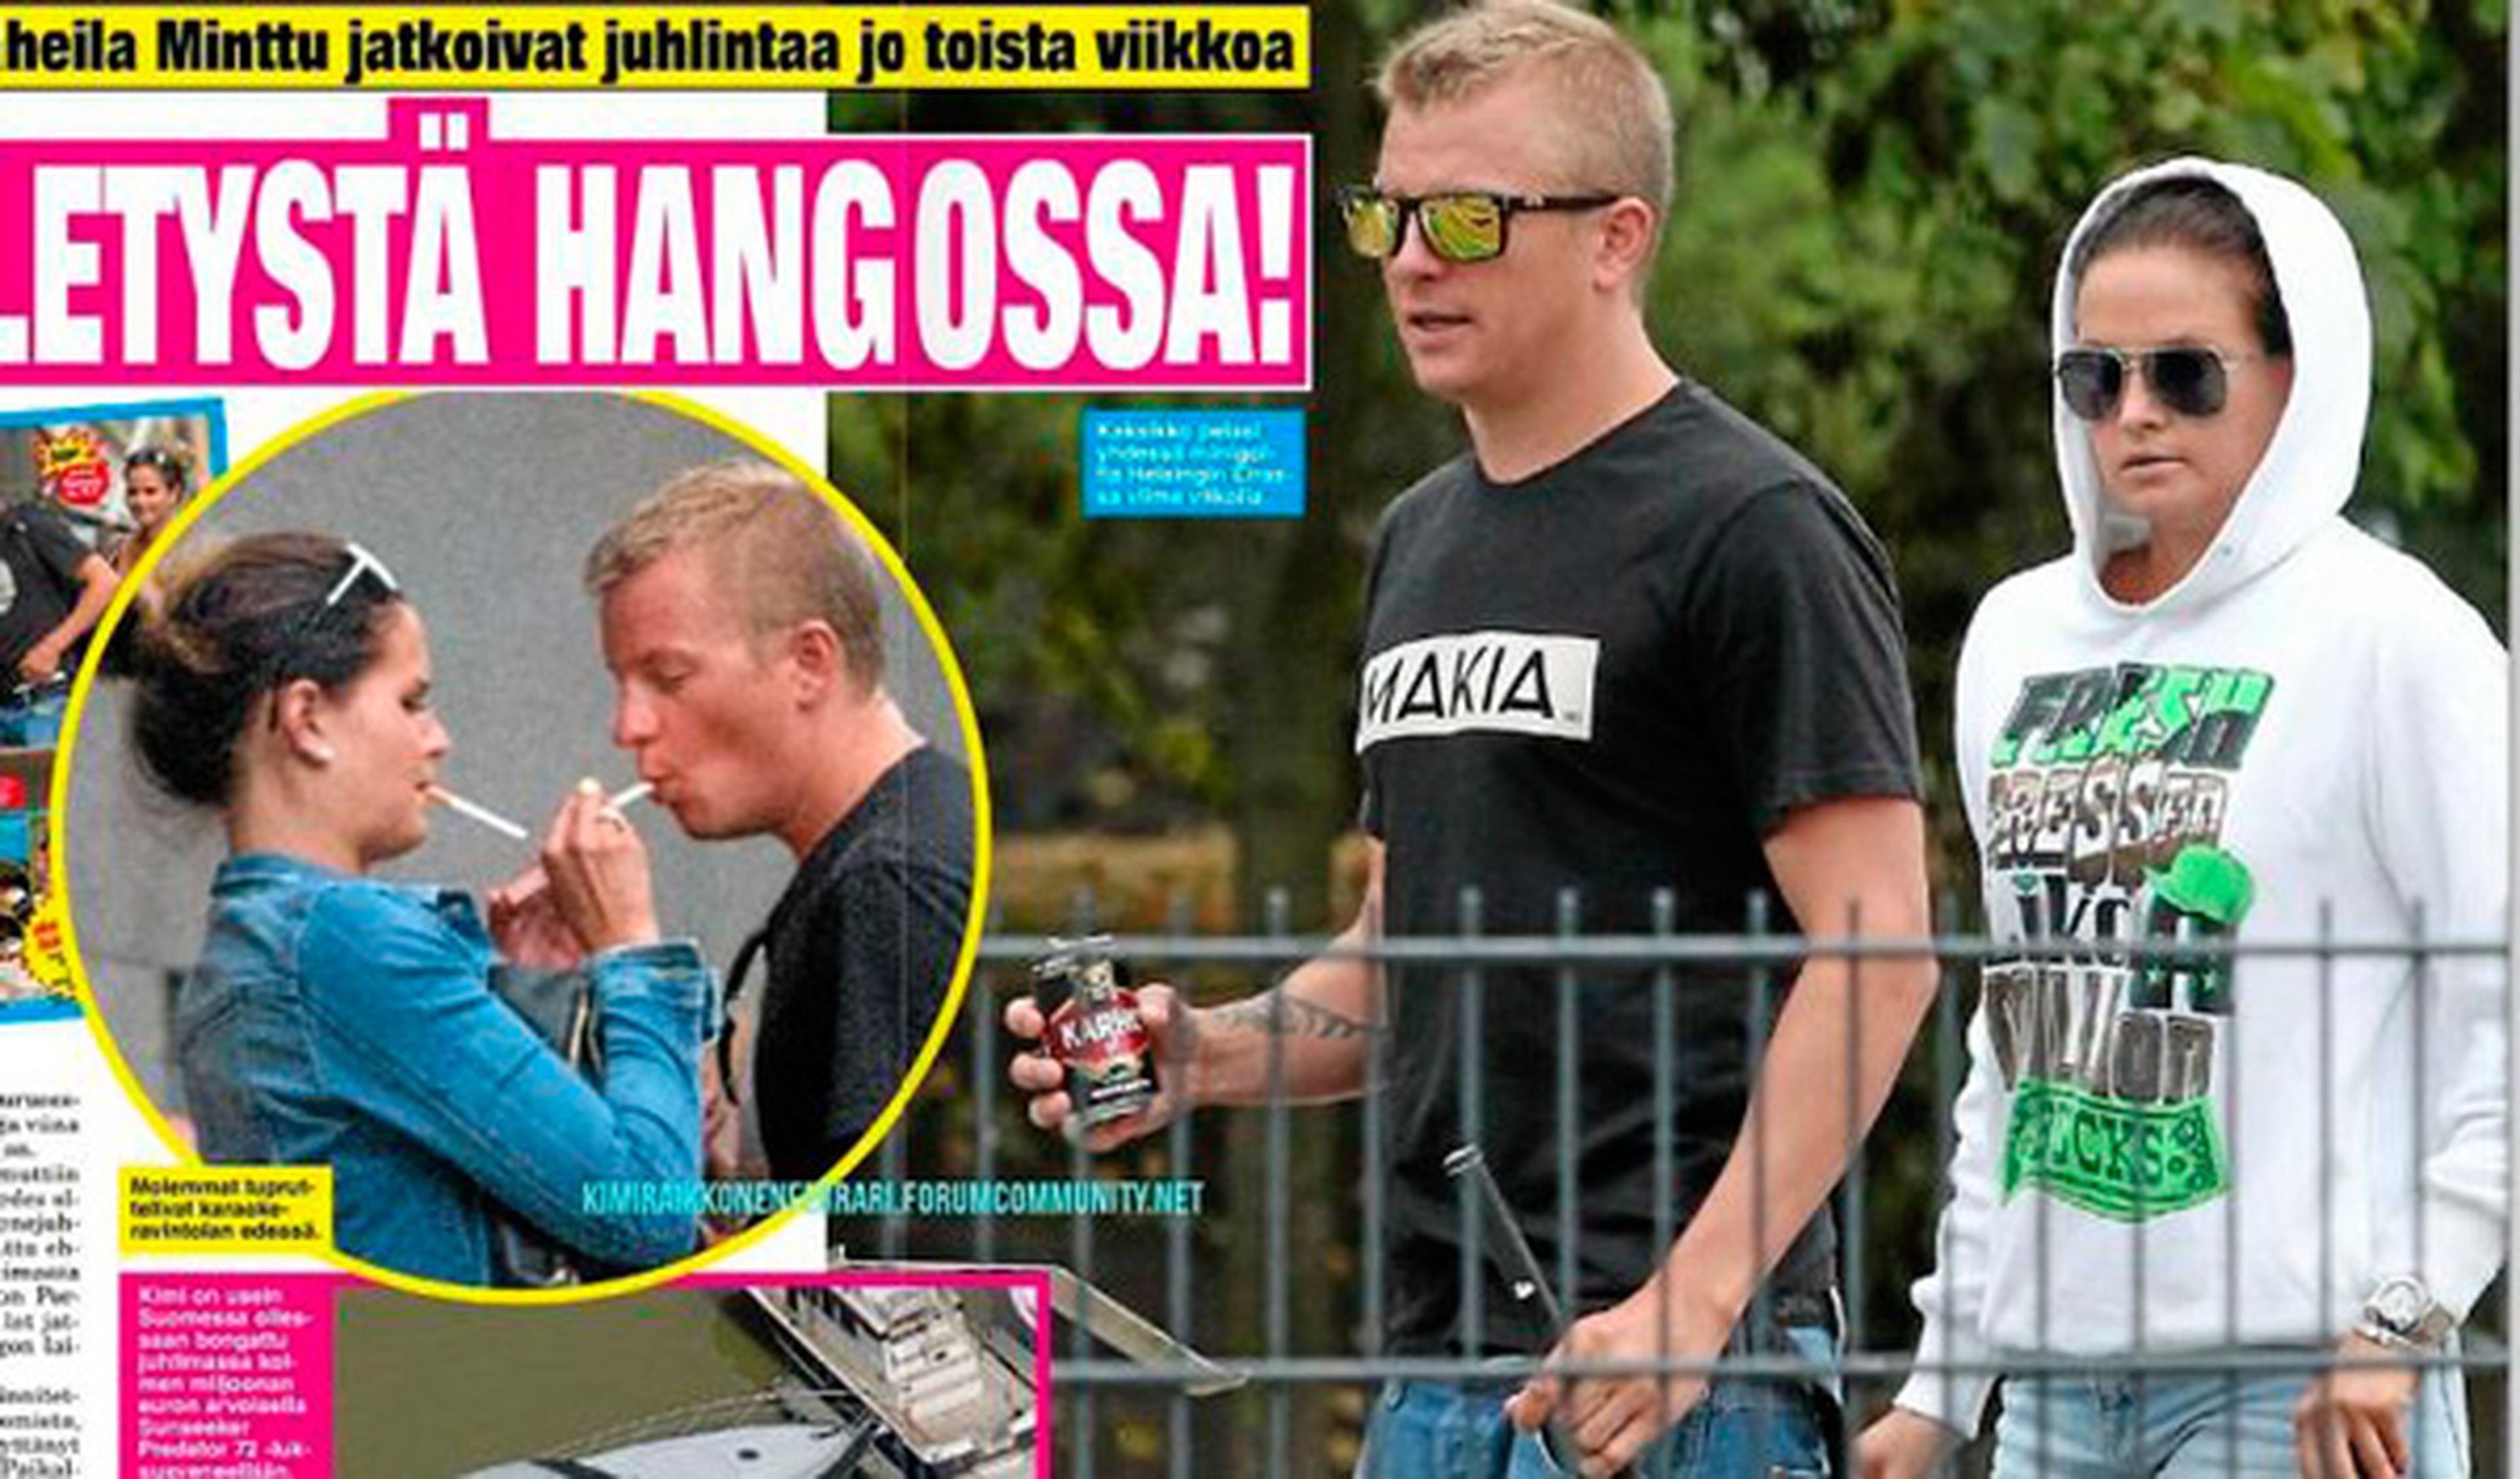 Kimi Räikkönen, pillado fumando con su novia